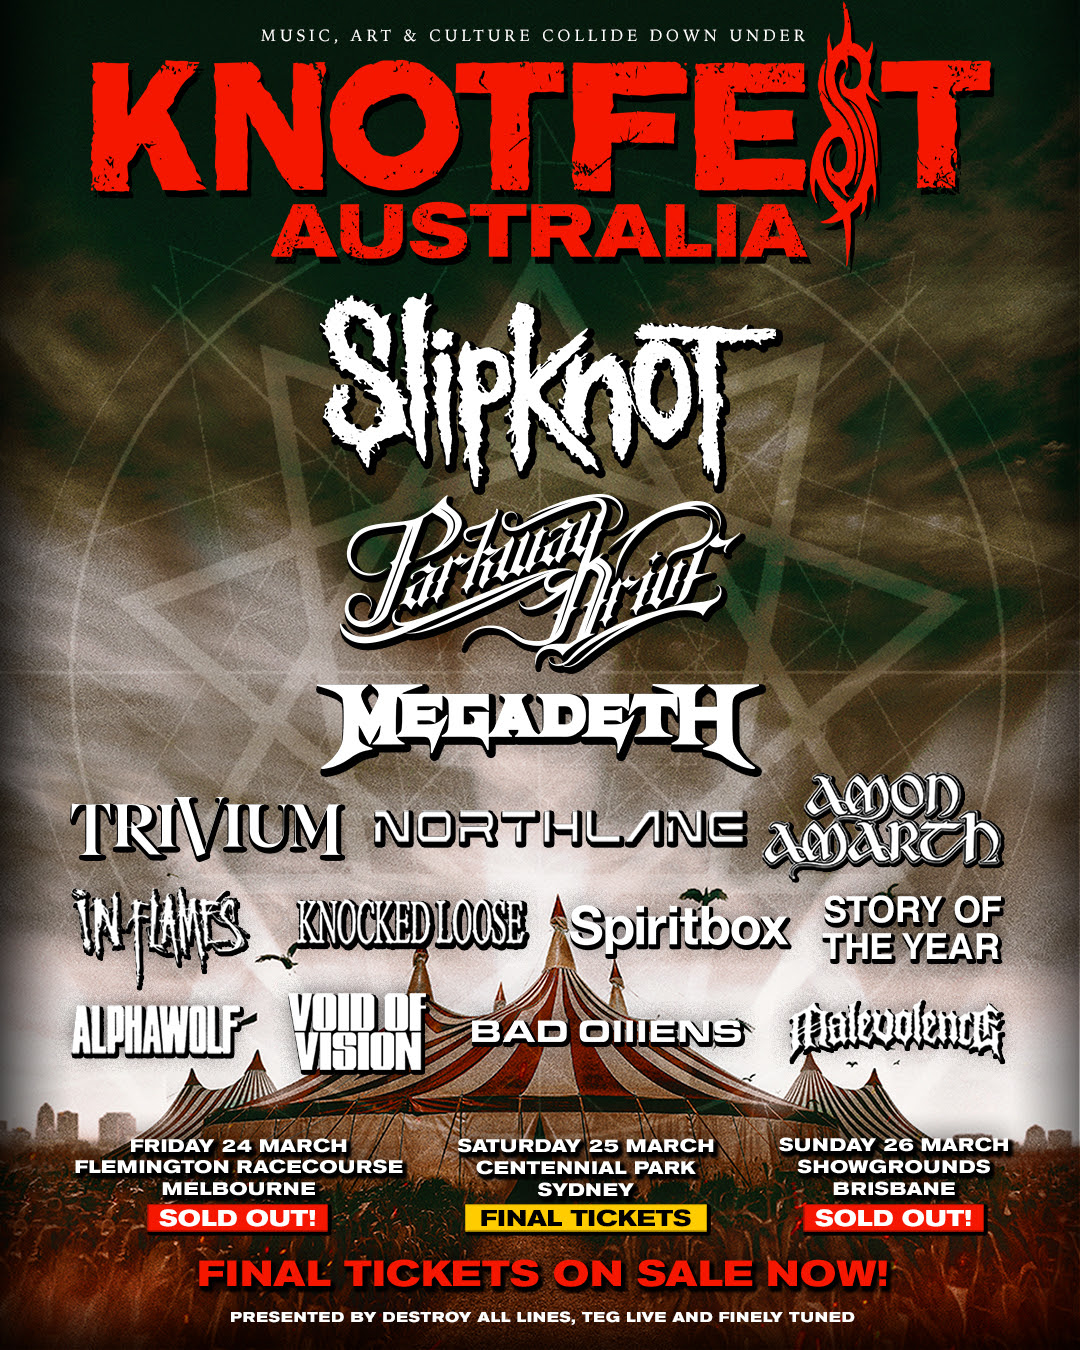 knotfest Australia poster